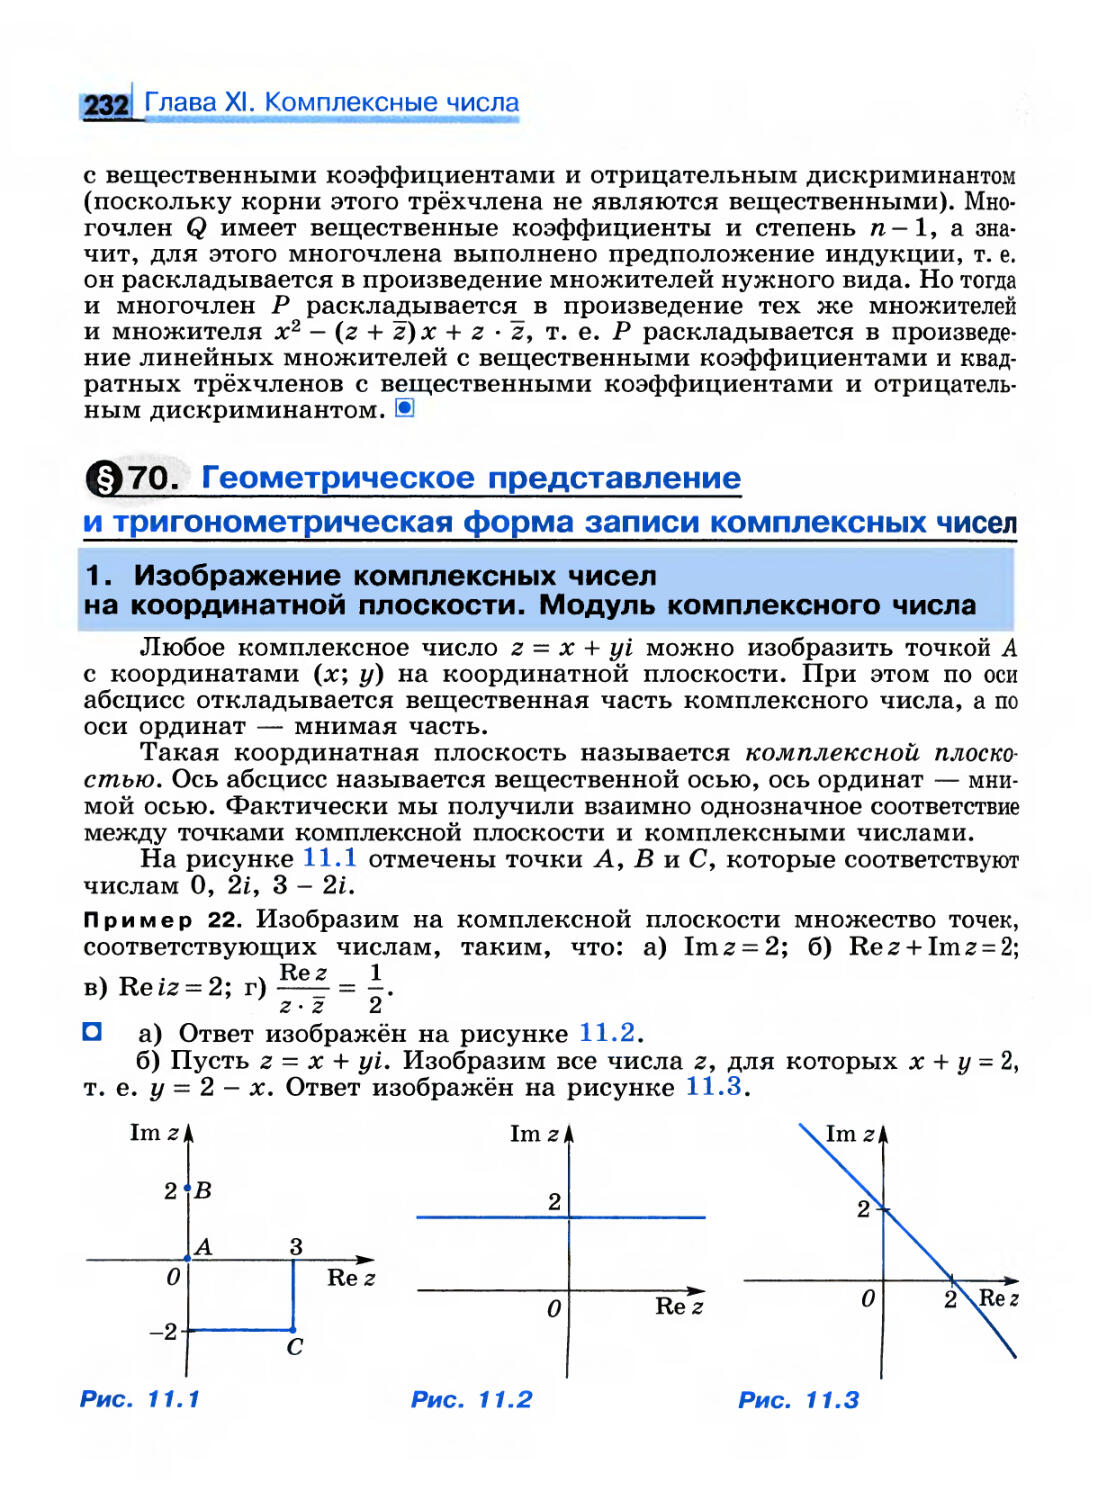 § 70. Геометрическое представление и тригонометрическая форма записи комплексных чисел